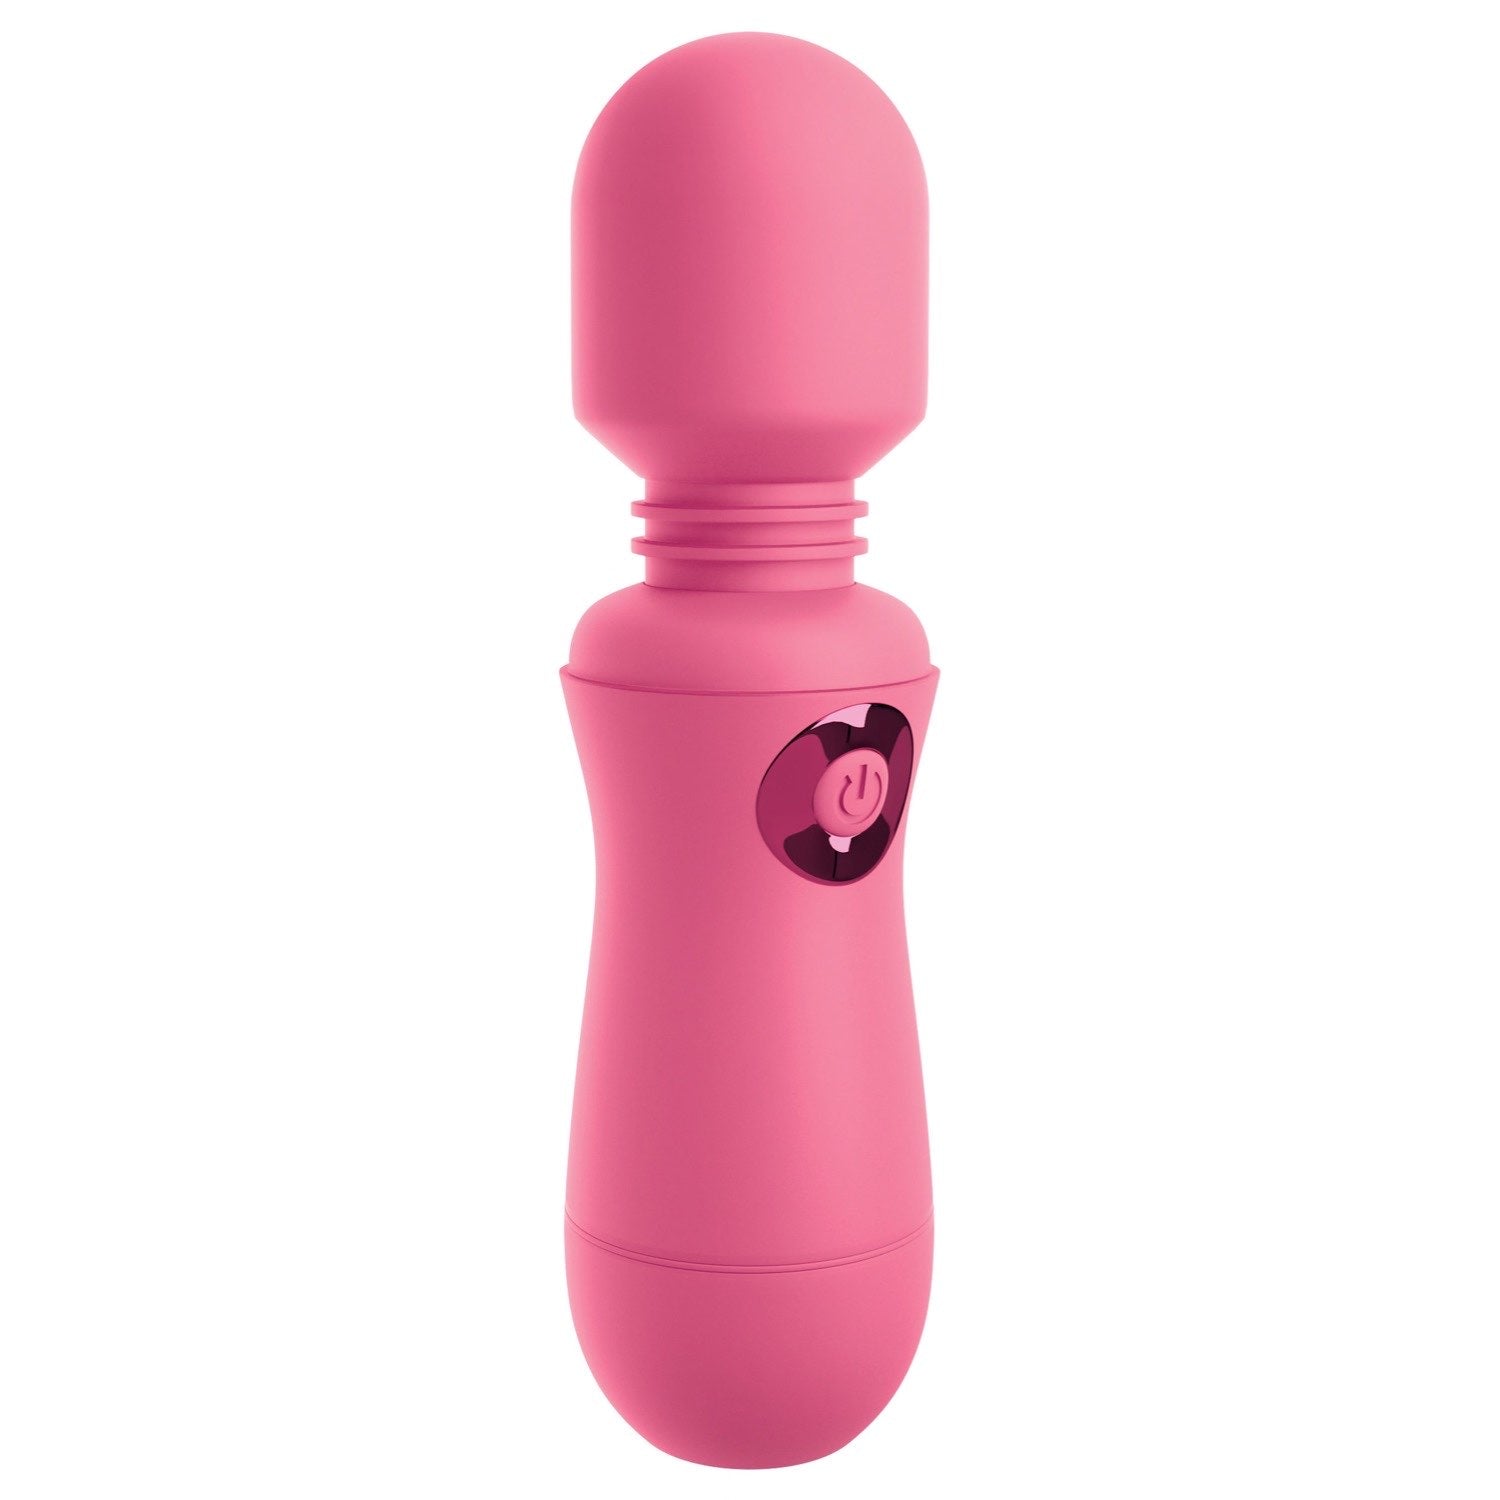 我的天啊！ 我的天啊！魔杖 #Enjoy - 粉色 USB 充电按摩棒 by Pipedream